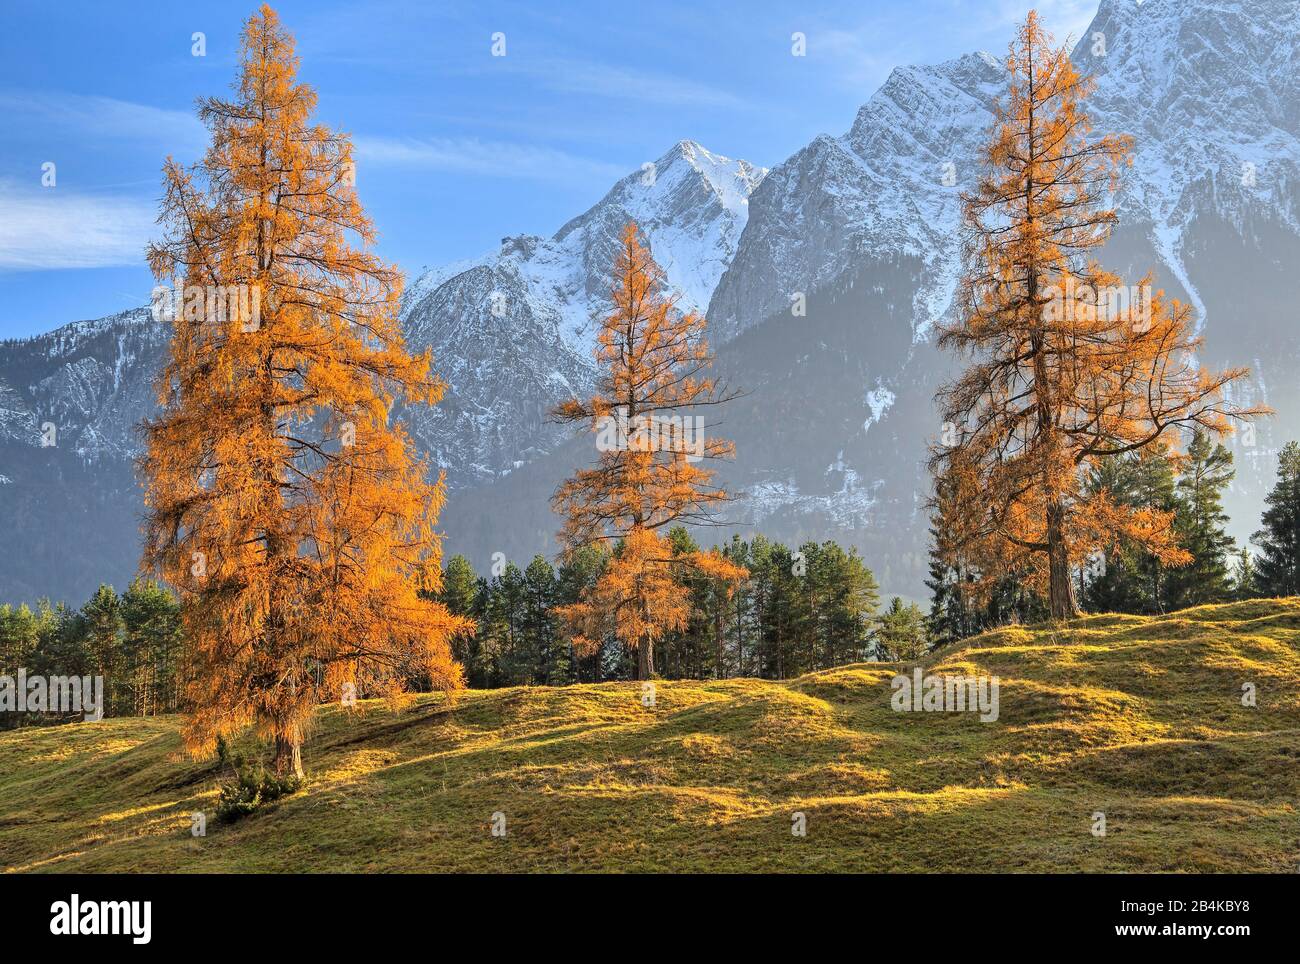 Autumn landscape at the Höhenrain path against Zugspitz mountains (2962m), Grainau, Wetterstein Mountains, Werdenfelser Land, Upper Bavaria, Bavaria, Germany Stock Photo